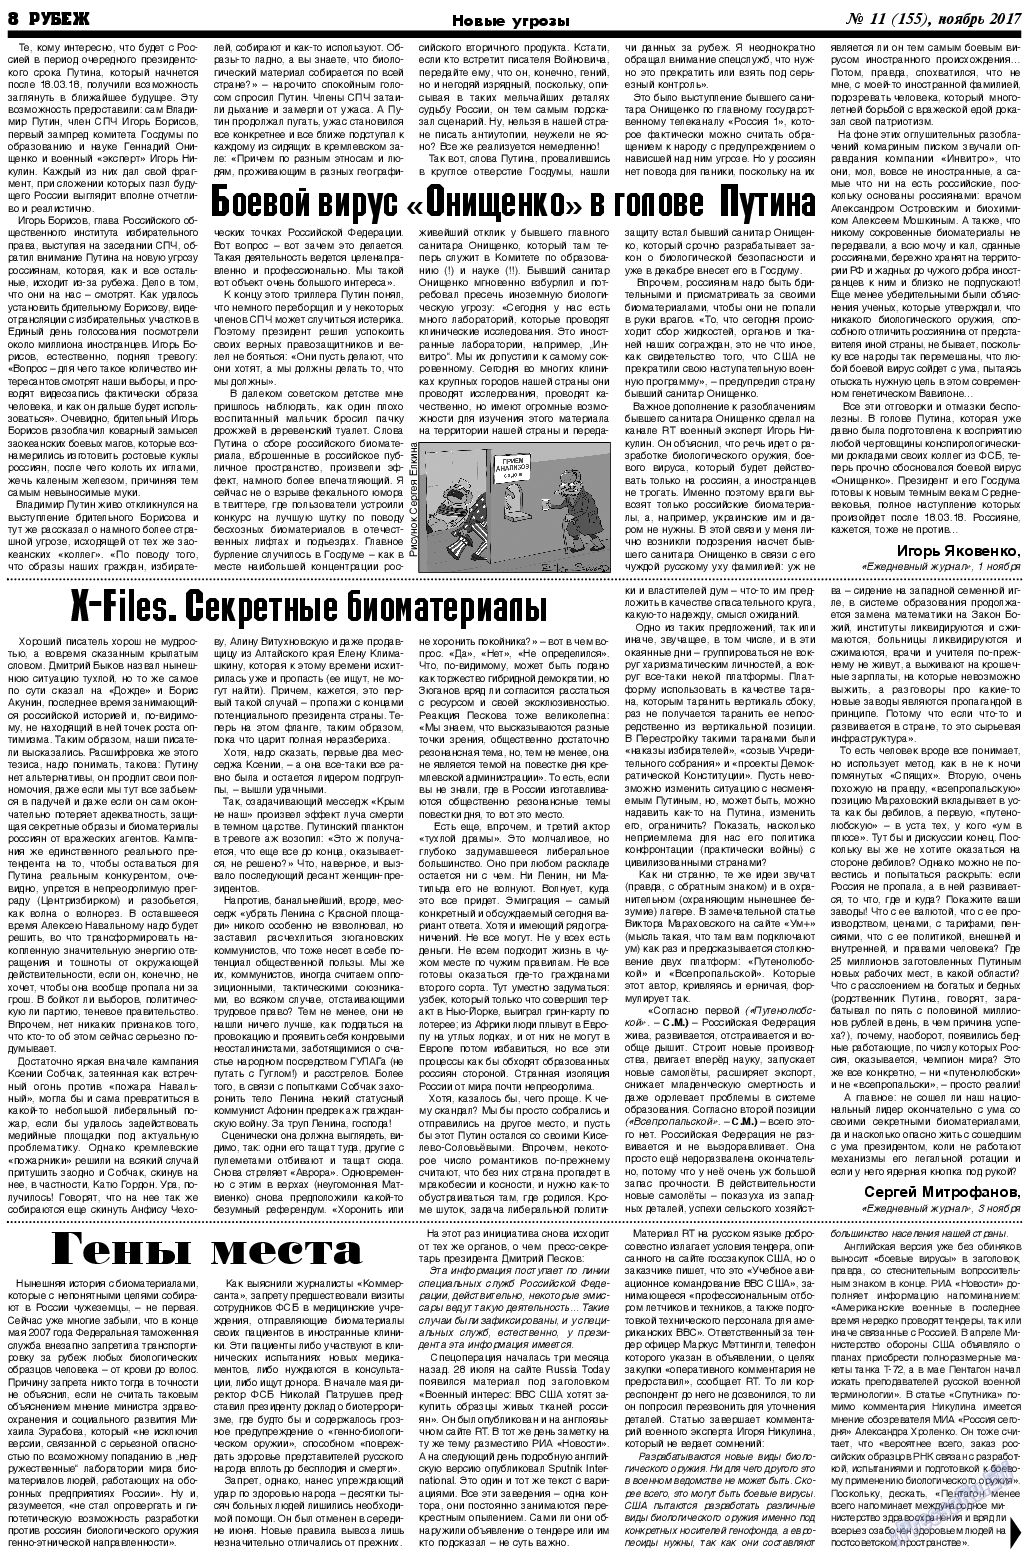 Рубеж (газета). 2017 год, номер 11, стр. 8